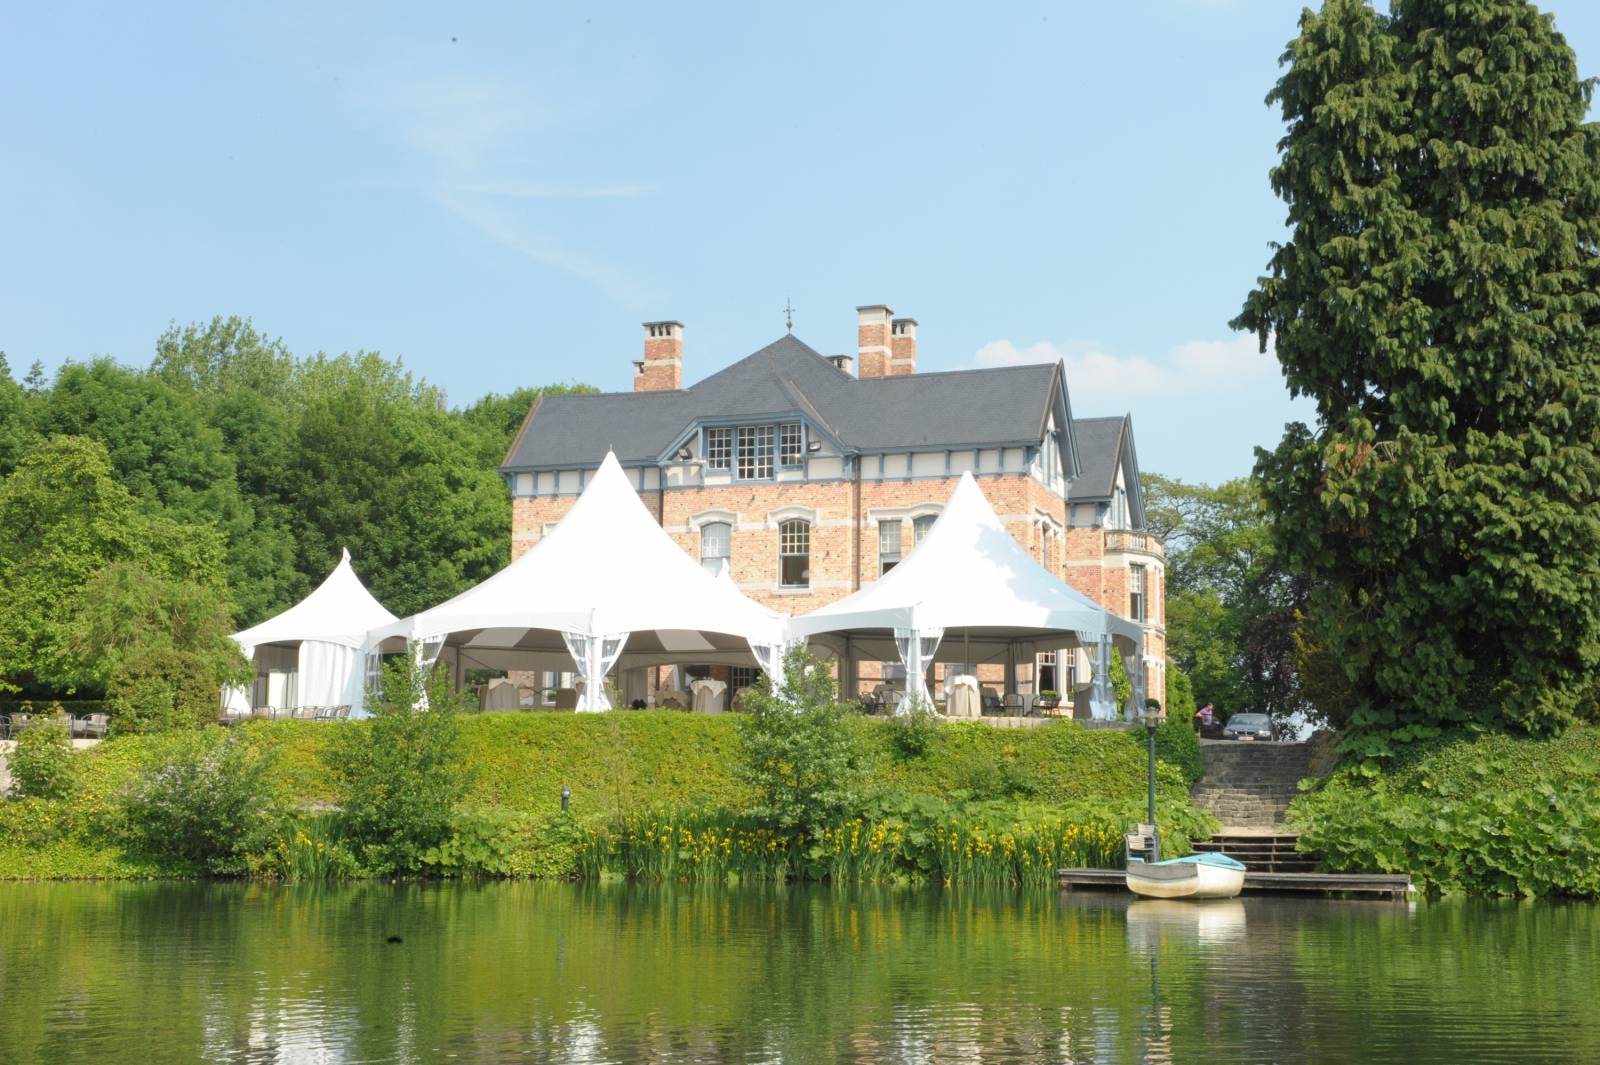 Domein Saint-Hubert - House of Weddings - Feestzaal Oost-Vlaanderen - Ronse - huwelijk - ceremonie cateri (25)